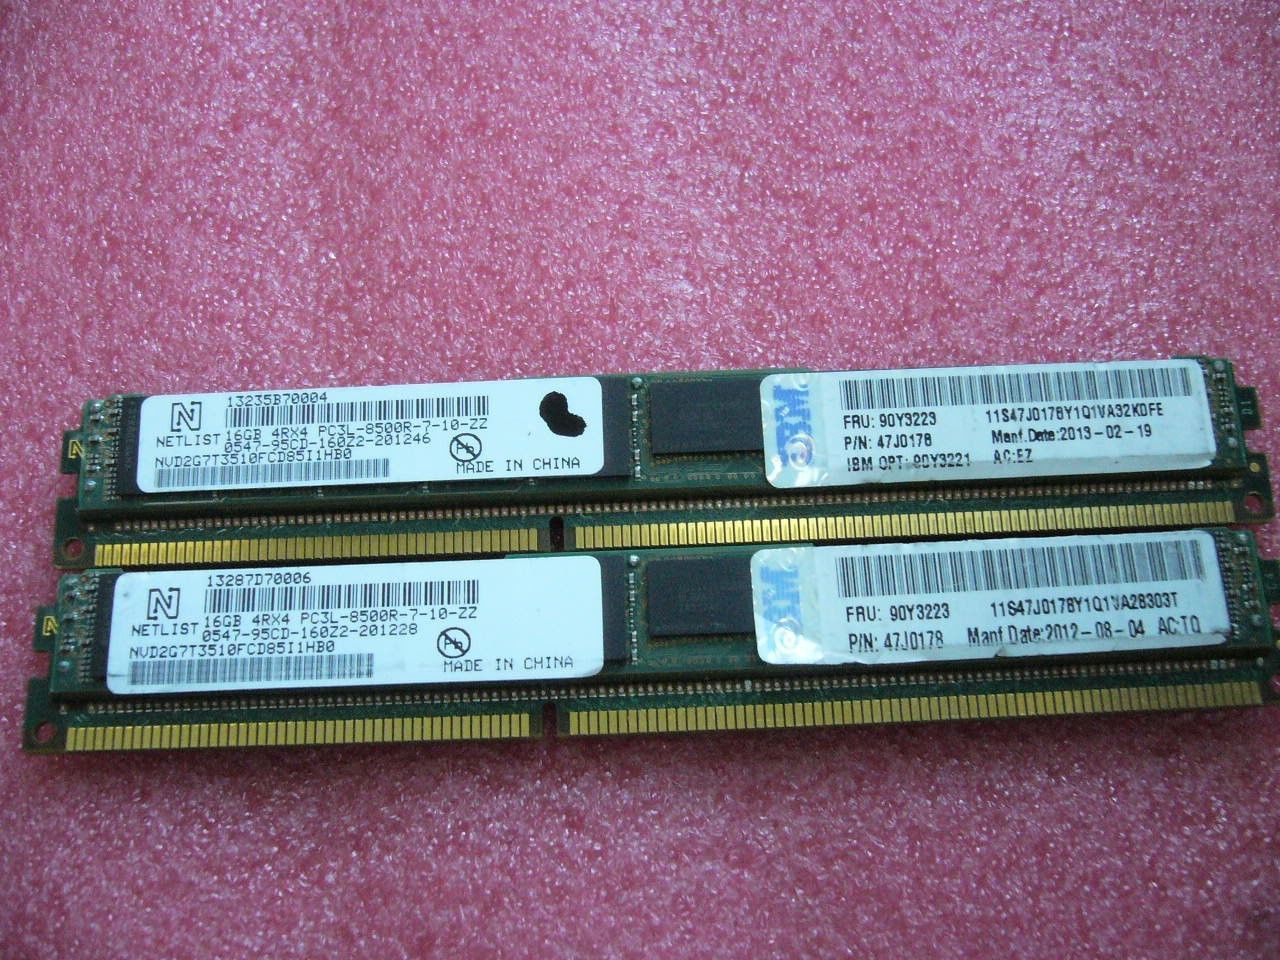 QTY 1x 16GB DDR3 PC3L-8500R ECC Registered Server memory 90Y3223 47J0178 - zum Schließen ins Bild klicken